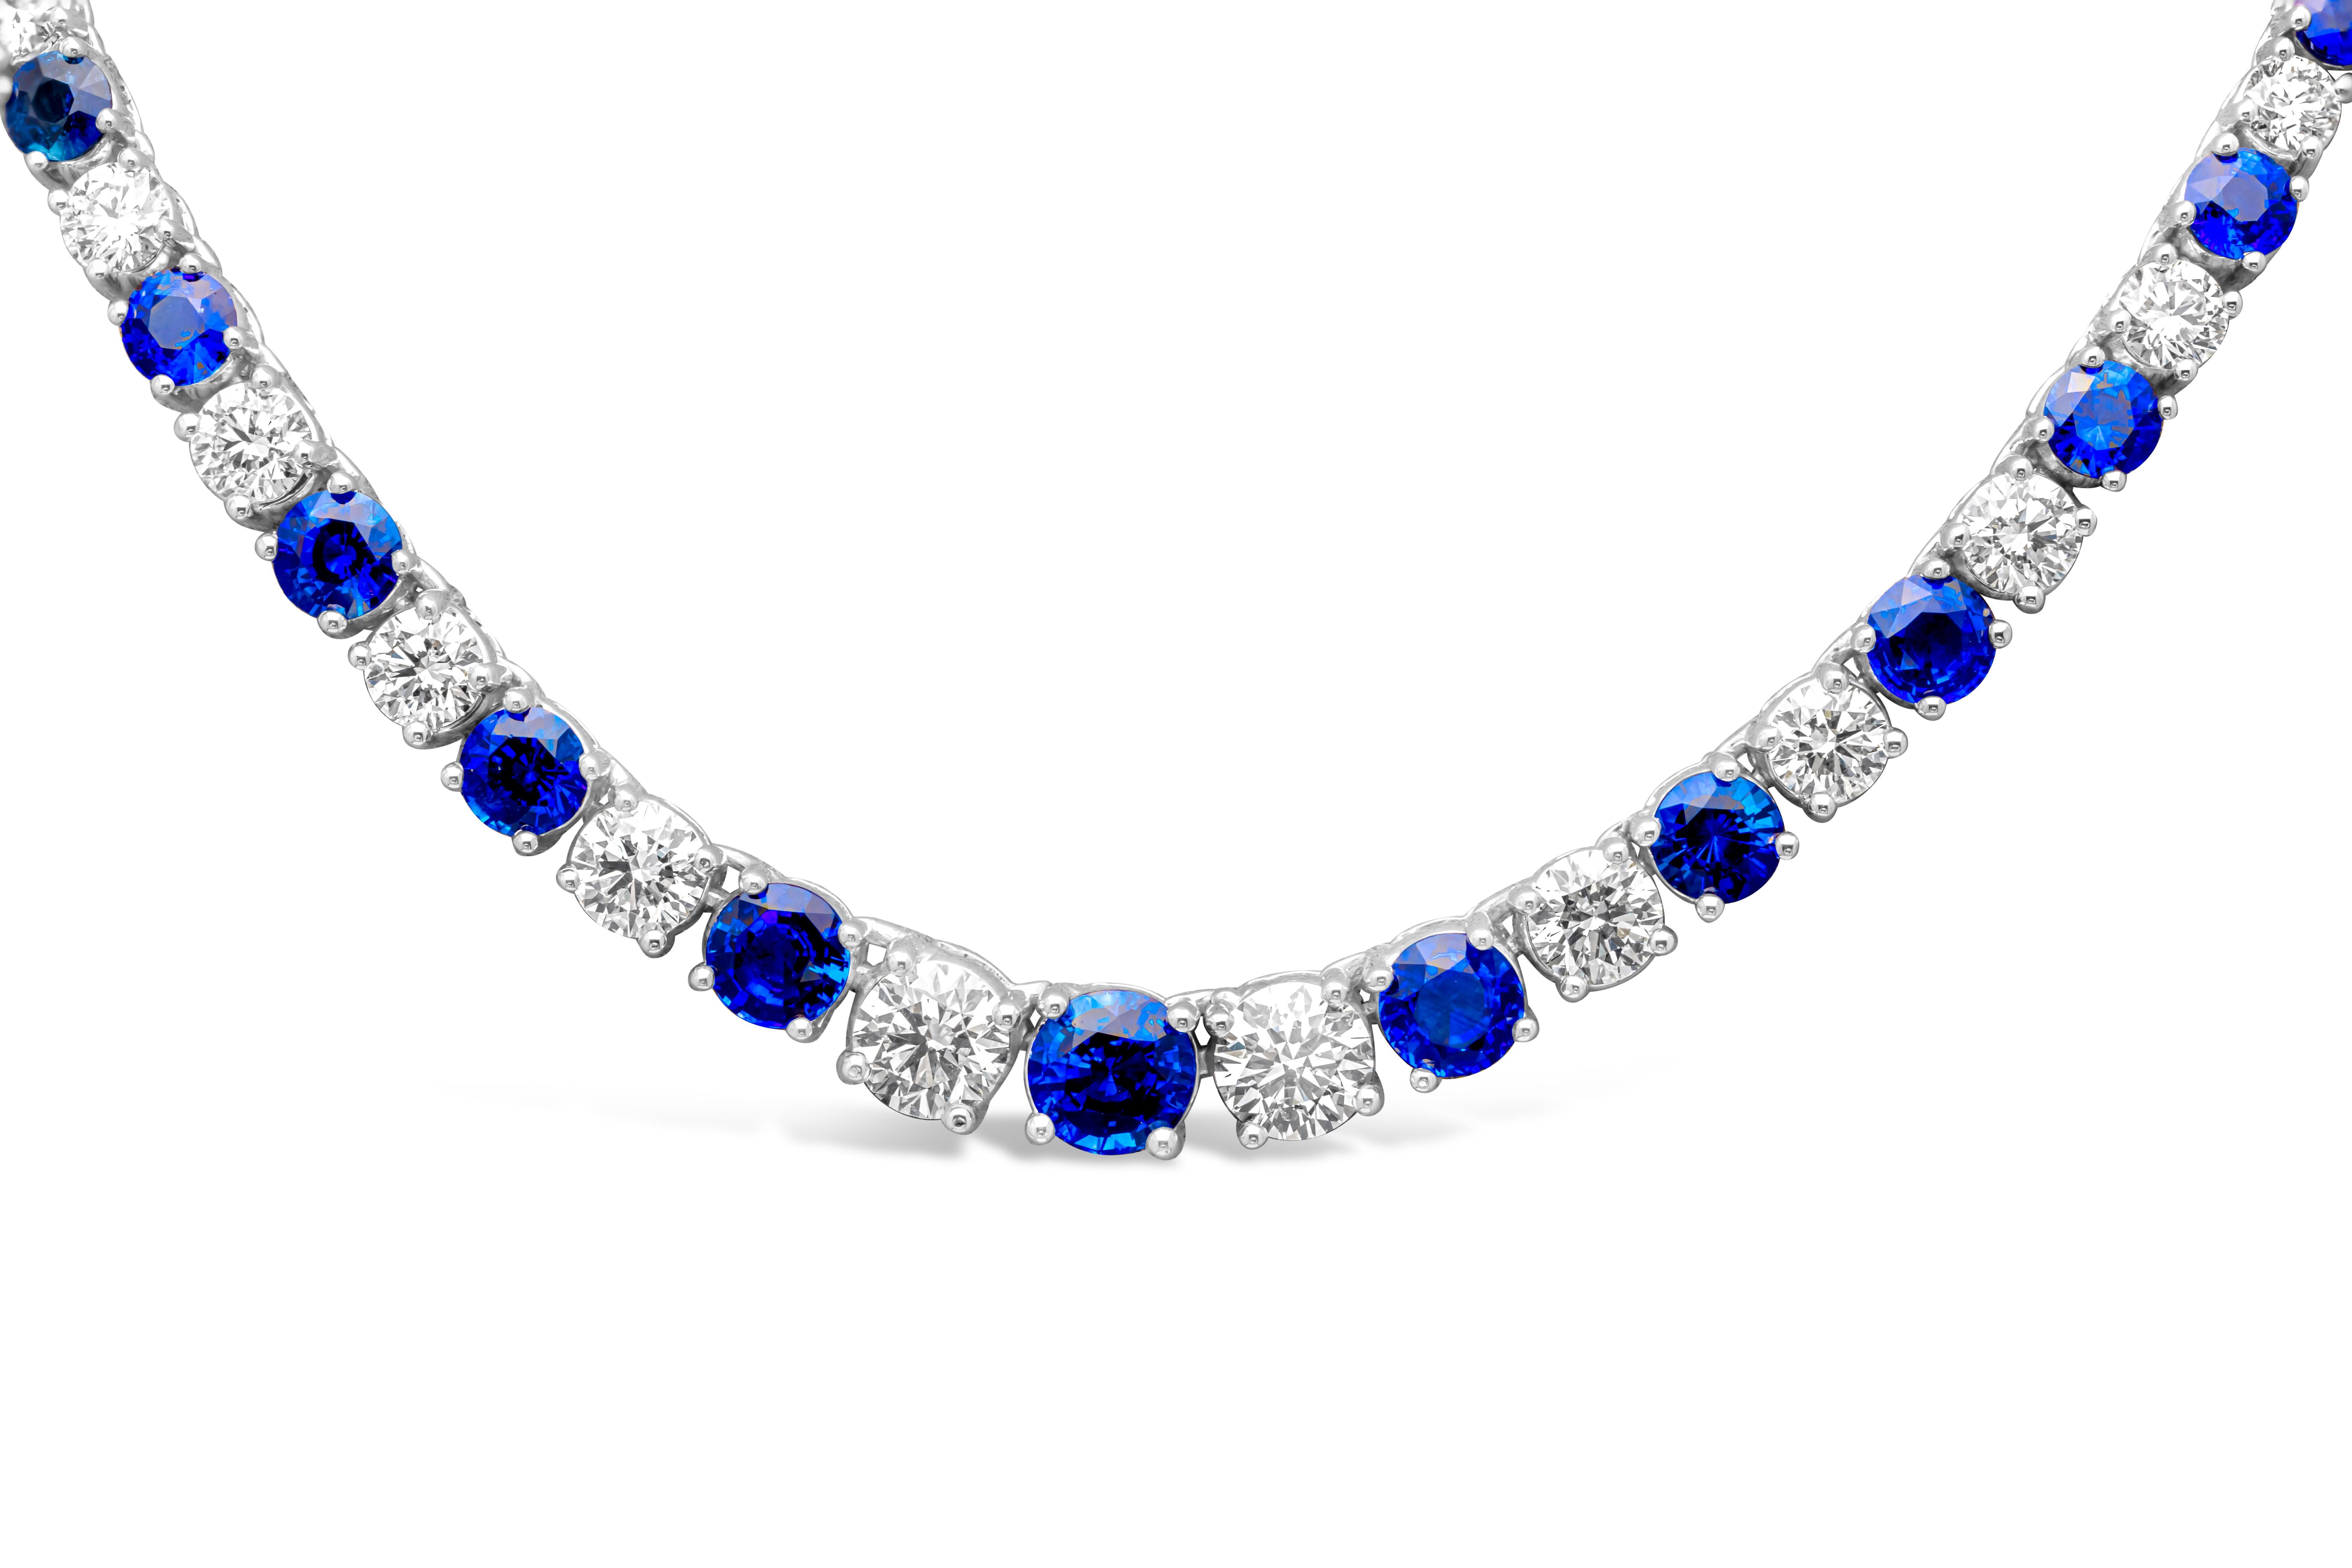 Luxuriöses und elegantes Riviere-Tennis-Collier mit brillanten runden blauen Saphiren und Diamanten, die sich elegant abwechseln und zur Mitte des Colliers hin größer werden. In einer klassischen vierzackigen Korbfassung. Blaue Saphire wiegen